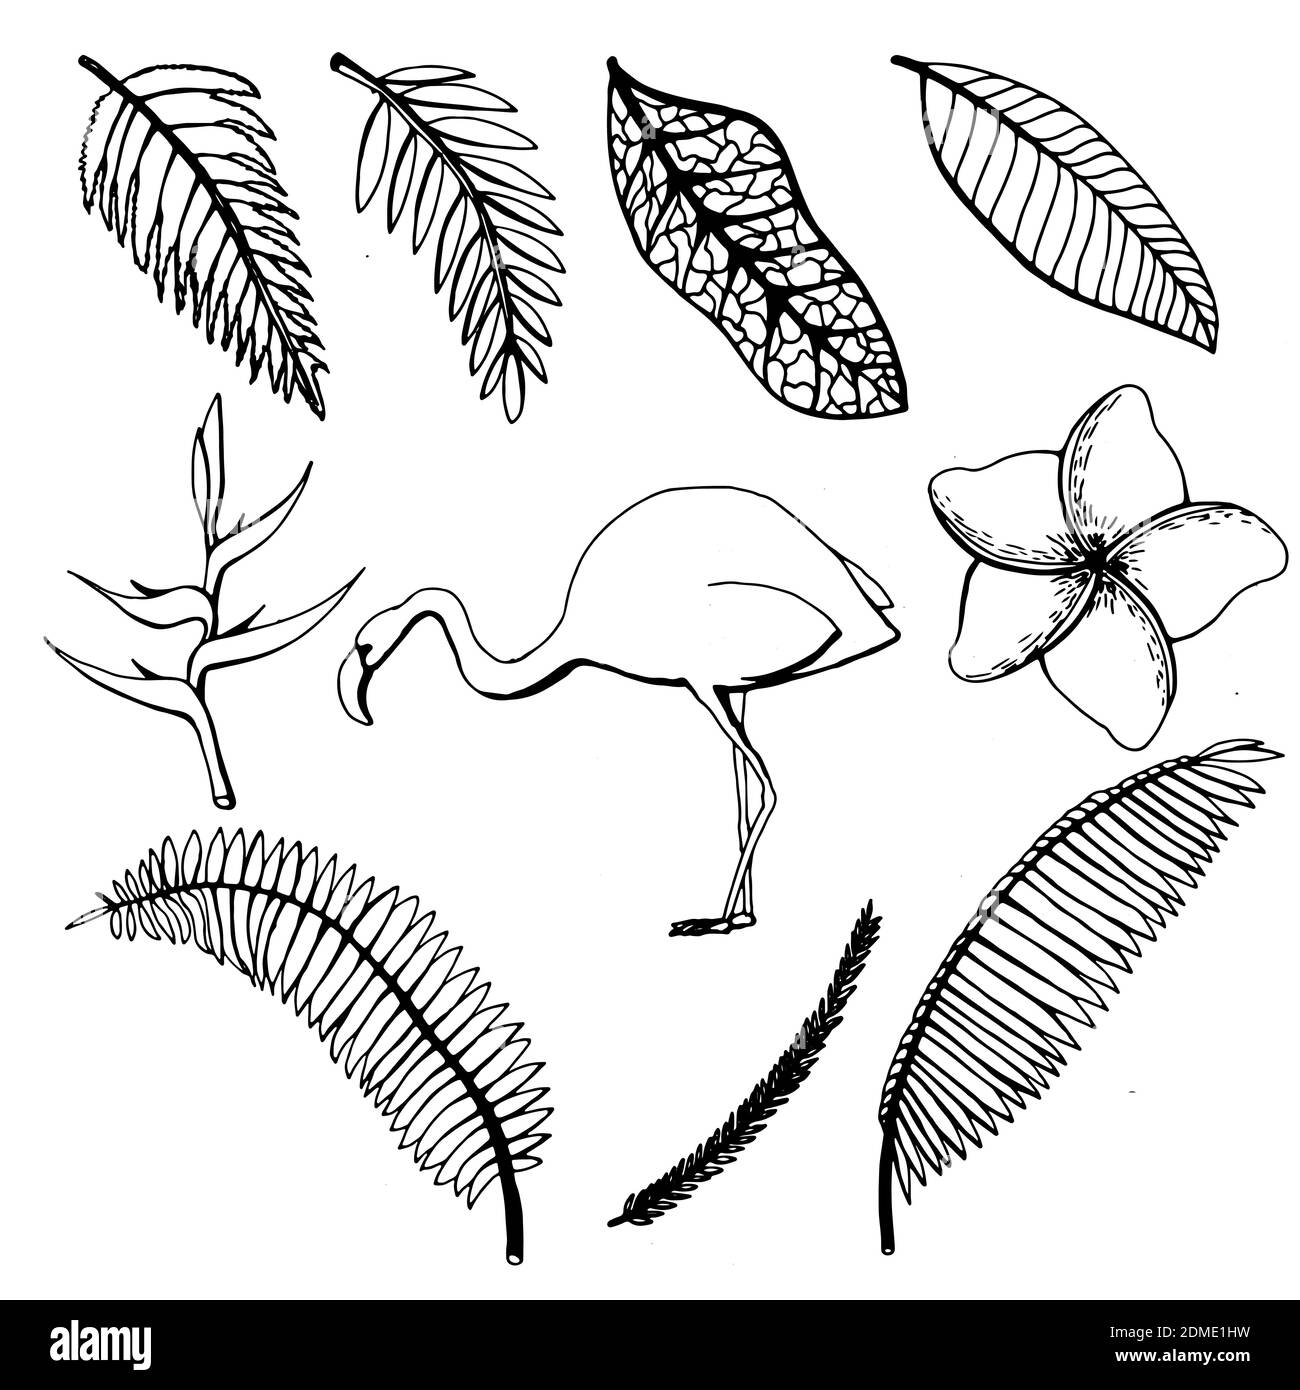 Dessin à la main de feuilles et de fleurs tropicales, flamants sur un fond blanc isolé. Illustration vectorielle Illustration de Vecteur